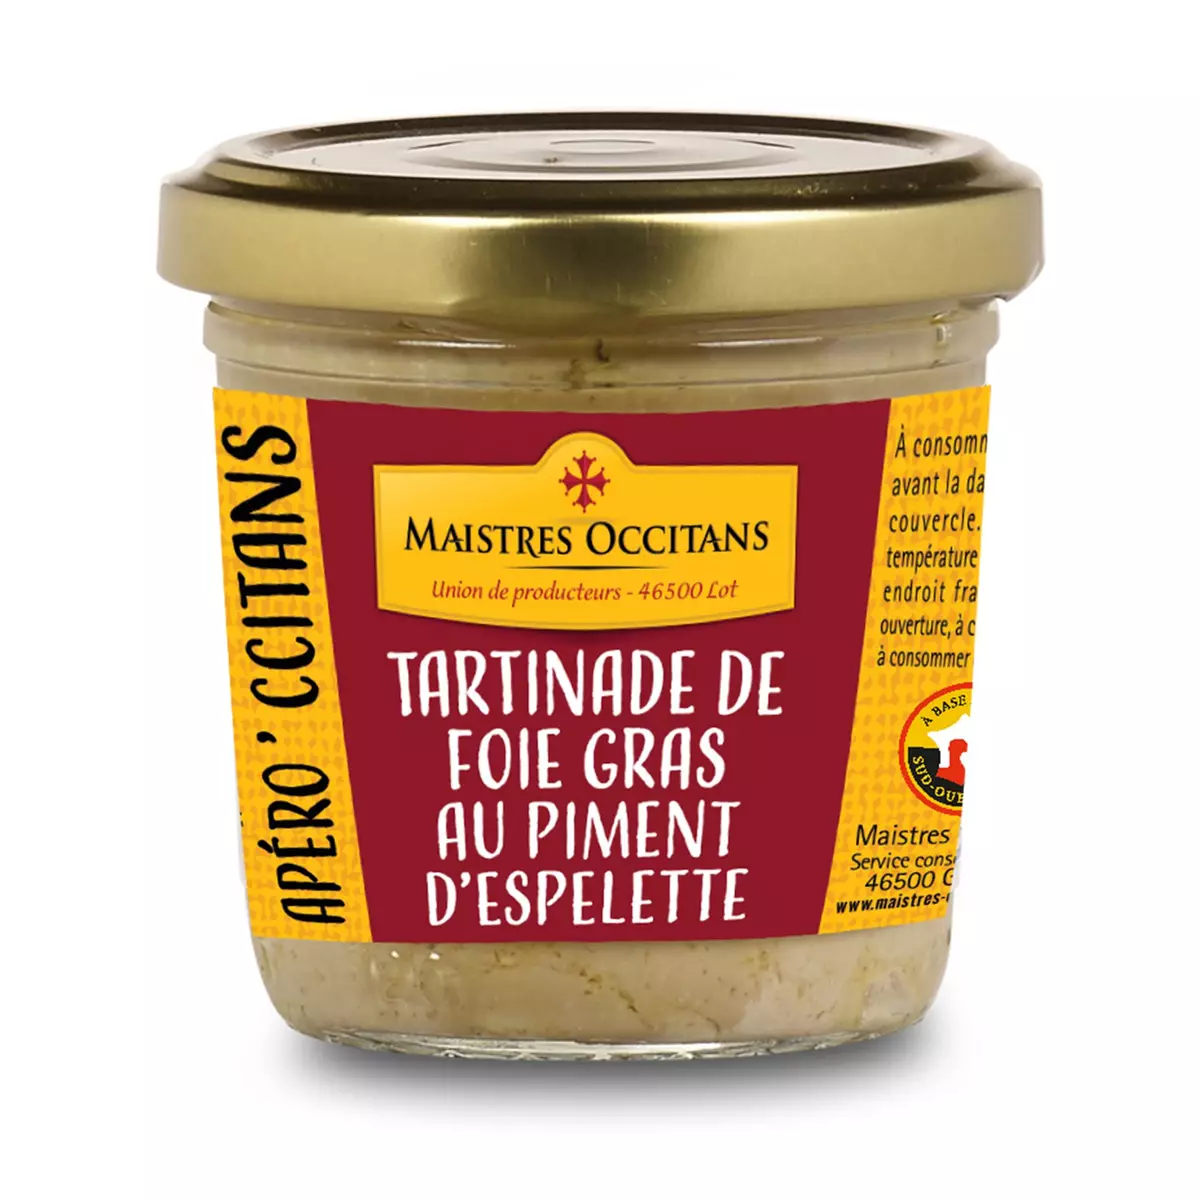 MAISTRES OCCITANS Foie gras au piment d'Espelette en tartinade 90g